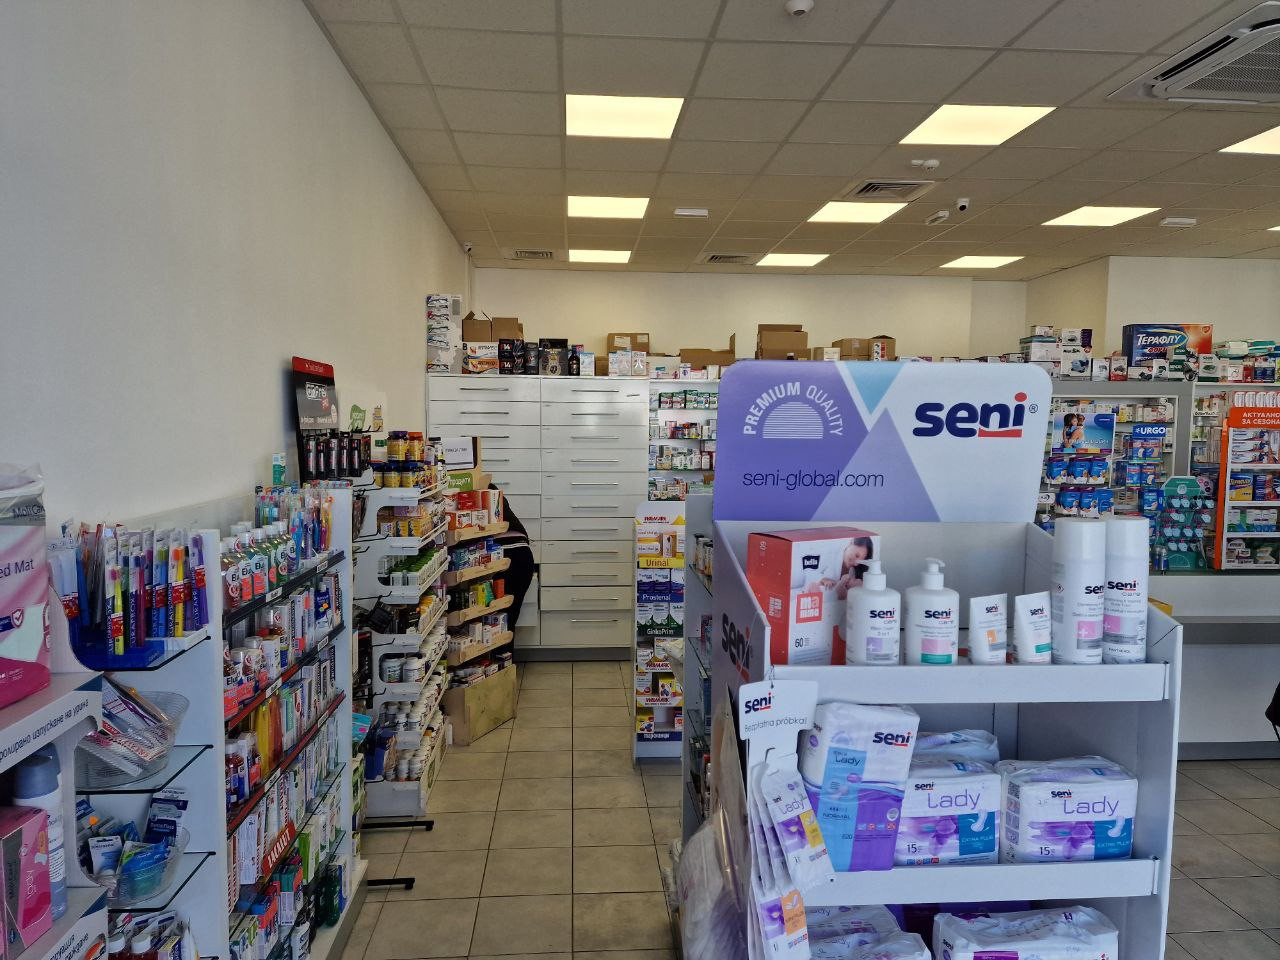 Нова аптека “Стела”отвори врати на бул. “Ботевградско шосе” в столицата, обещавайки атрактивни цени, професионално обслужване и разнообразие от най-добрите продукти на пазара - Снимка 3